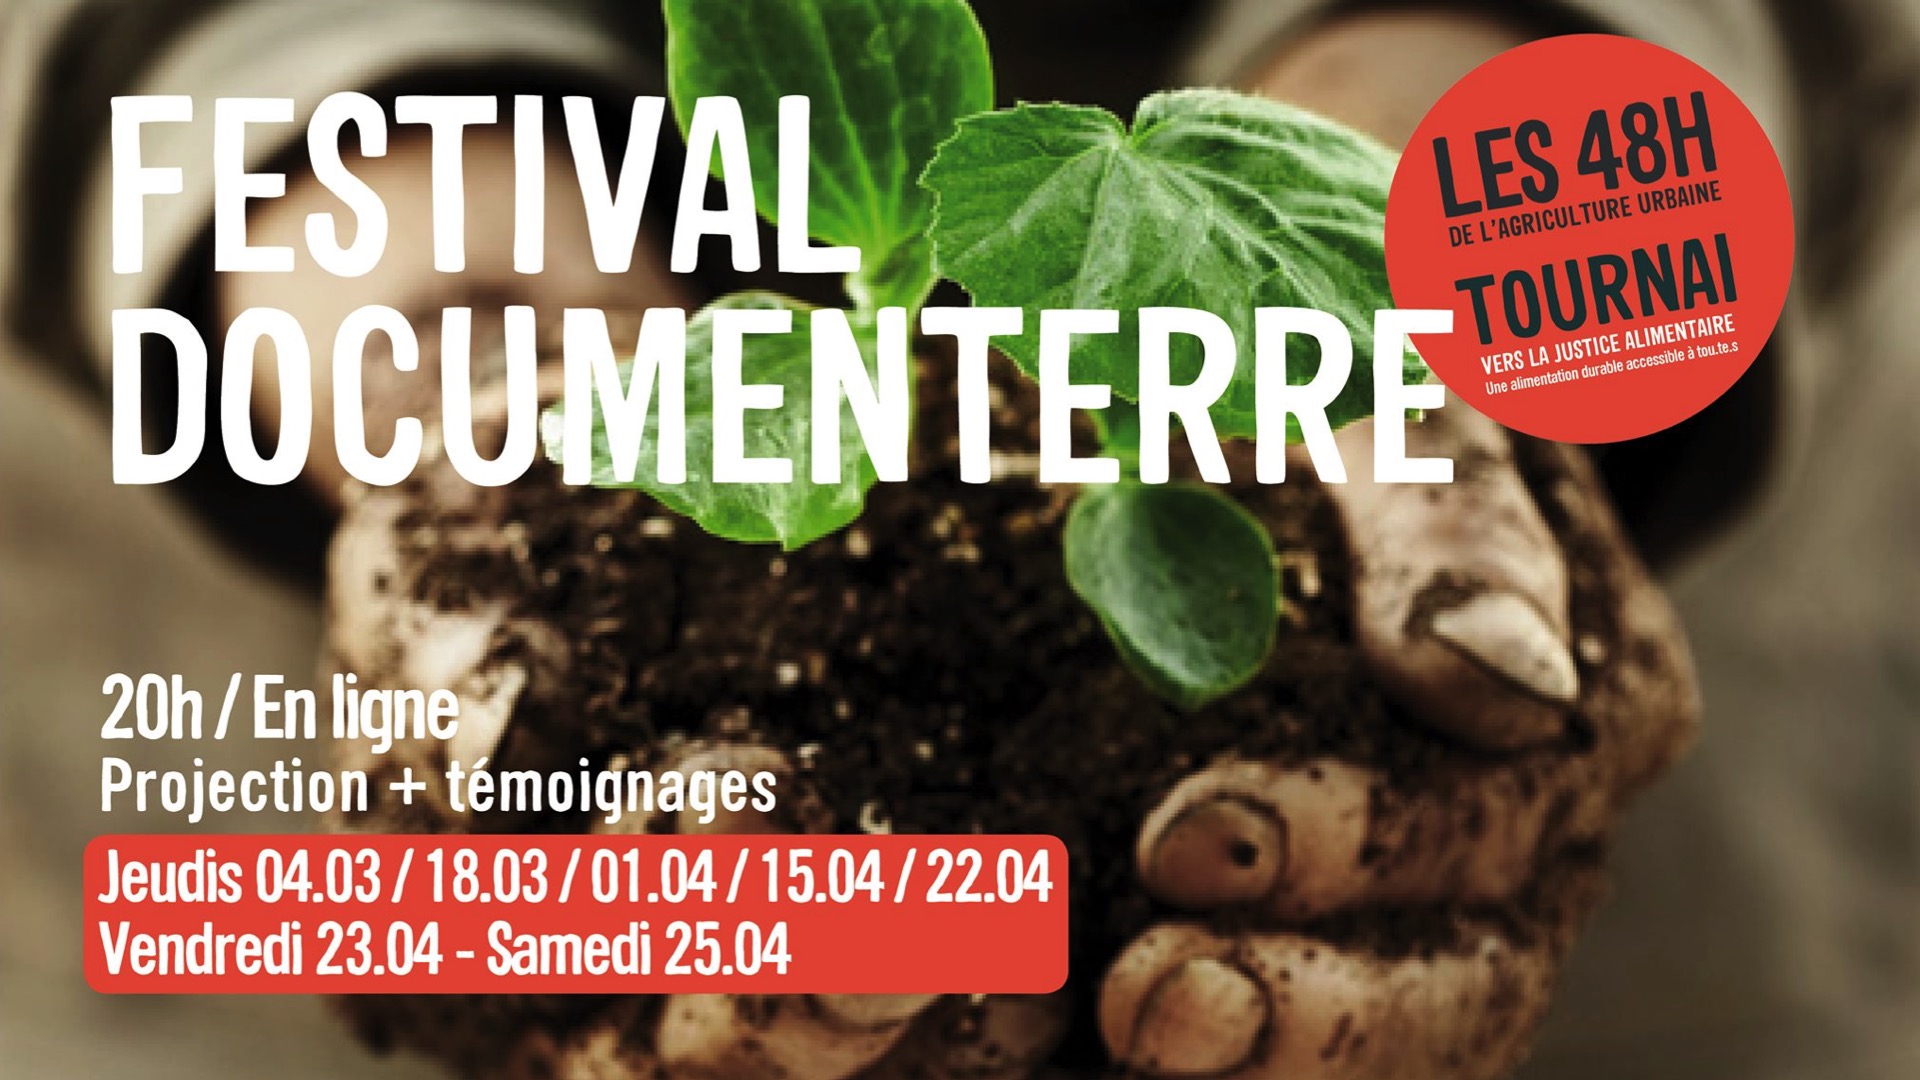 Tournai : un festival «DocumenTERRE» autour de l'accès à une alimentation durable